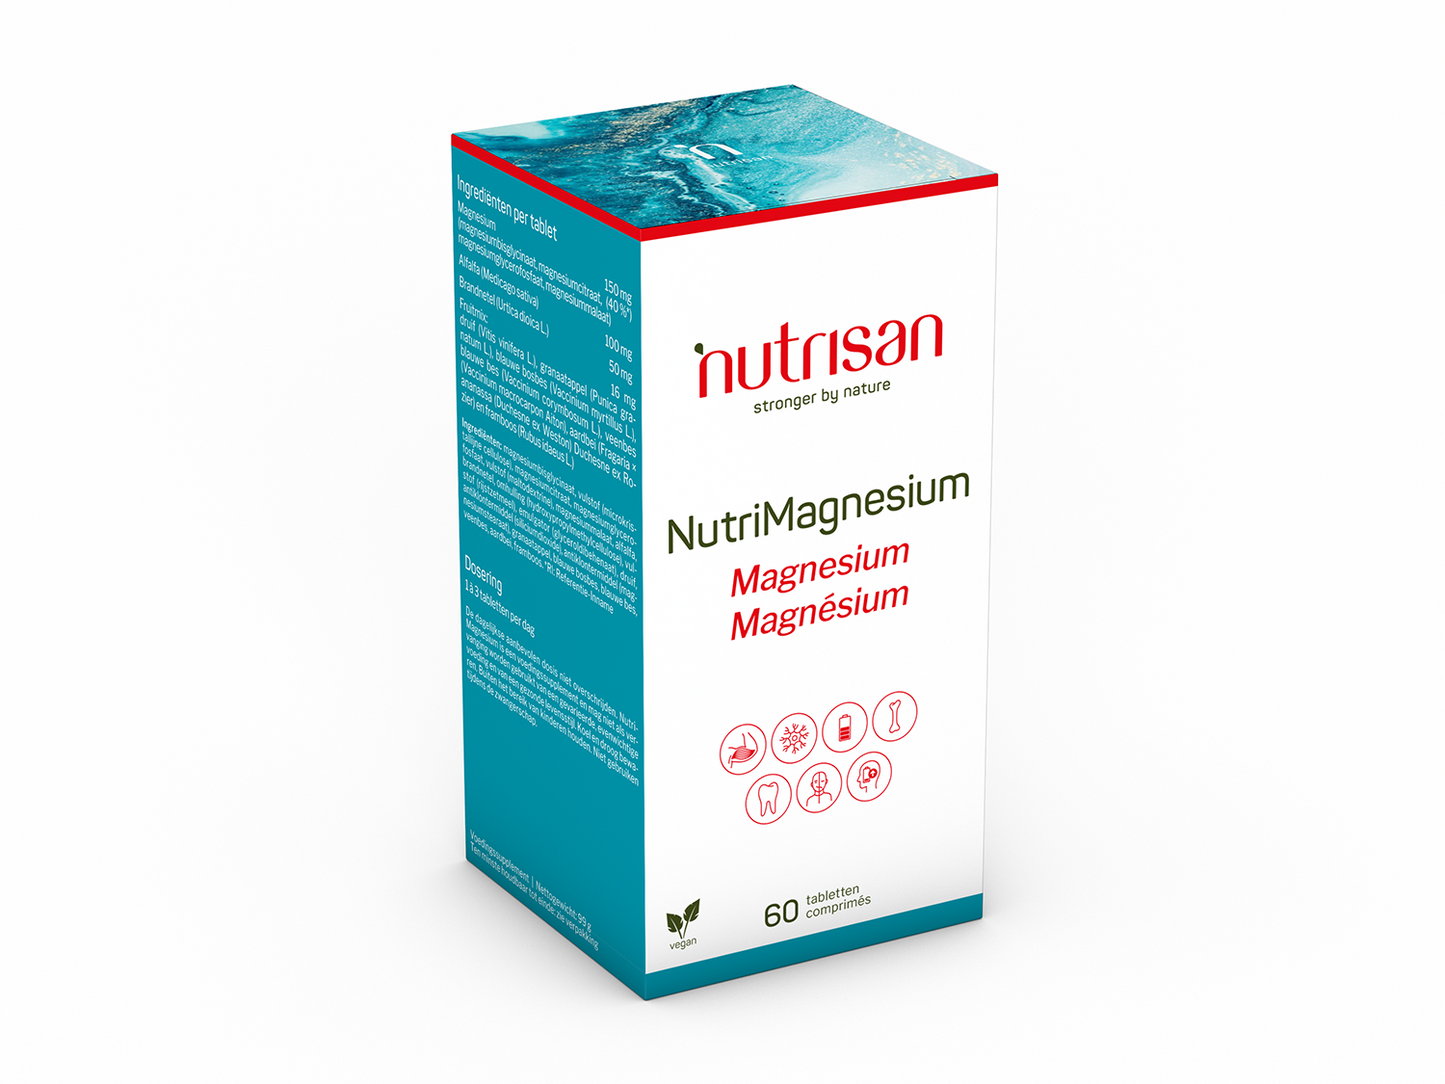 Nutrisan NutriMagnesium - Magnesium supplement